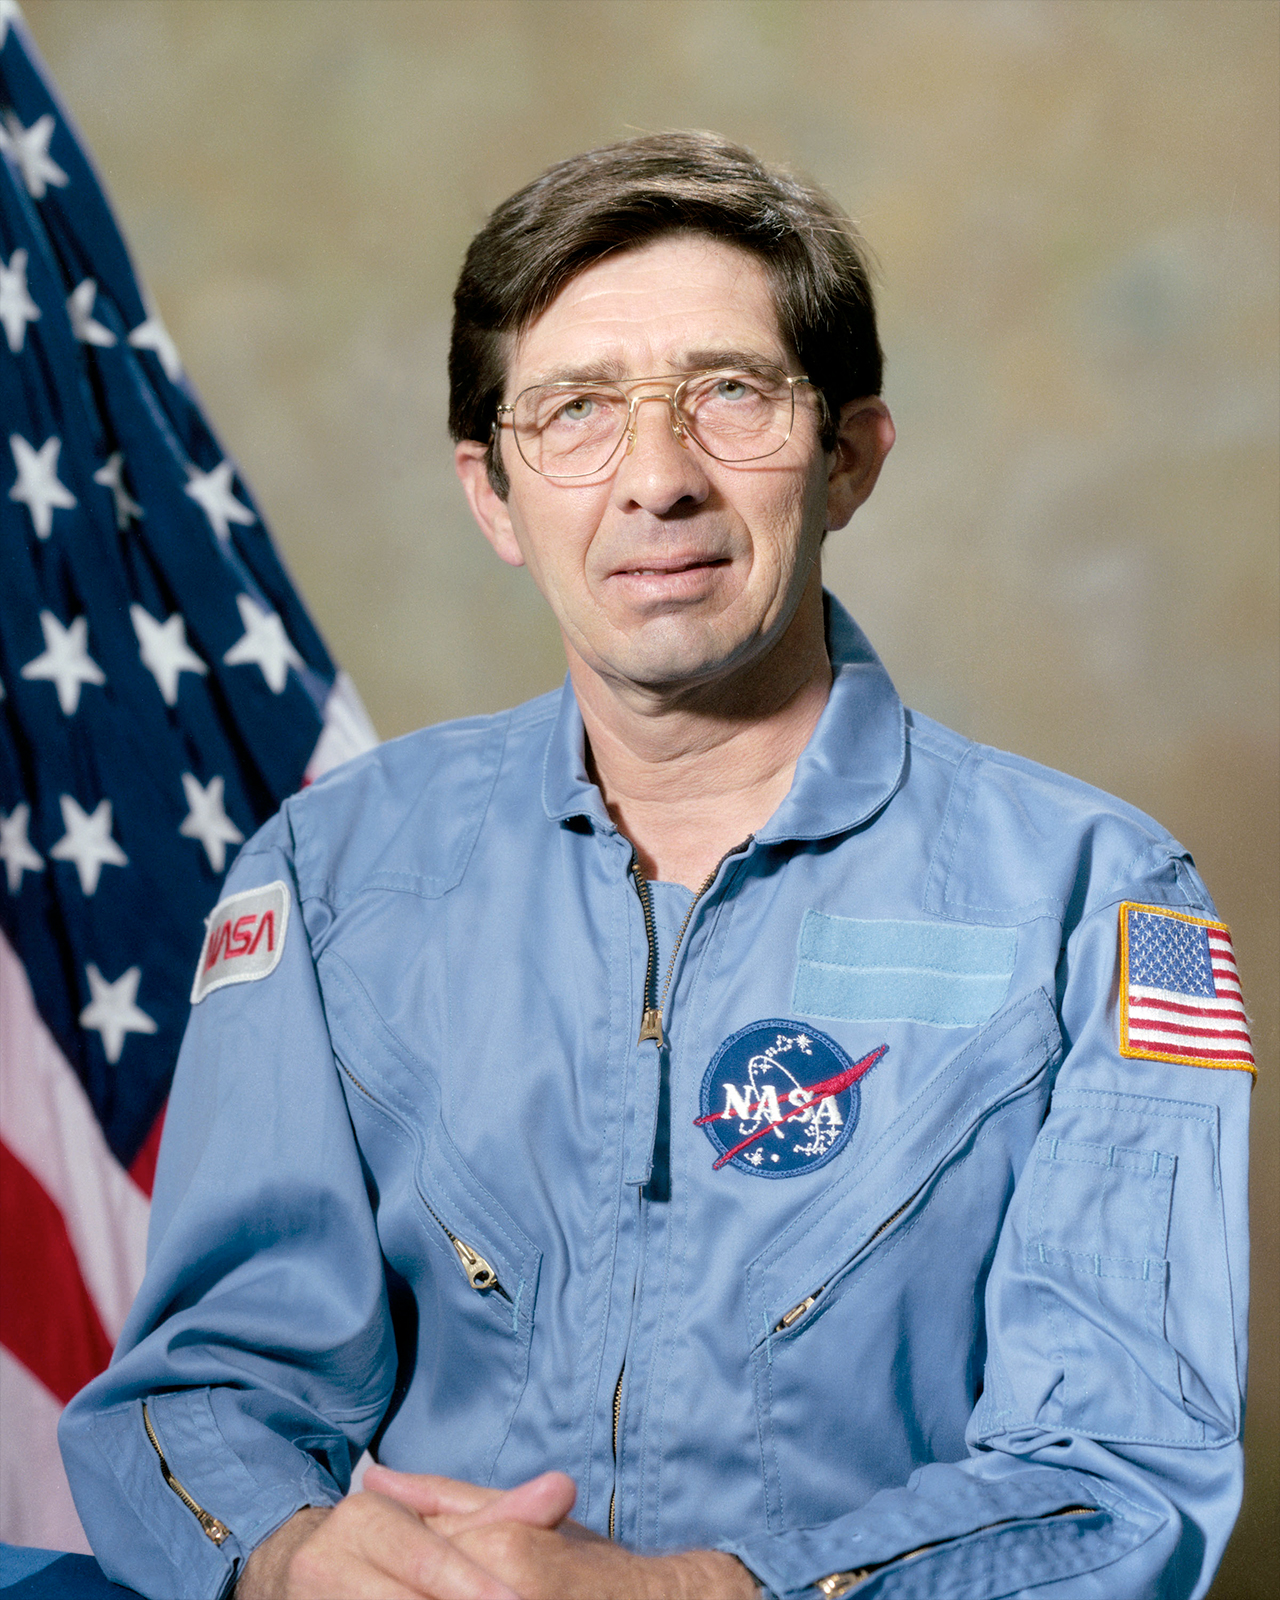 NASA portrait of payload specialist Lodewijk van den Berg.